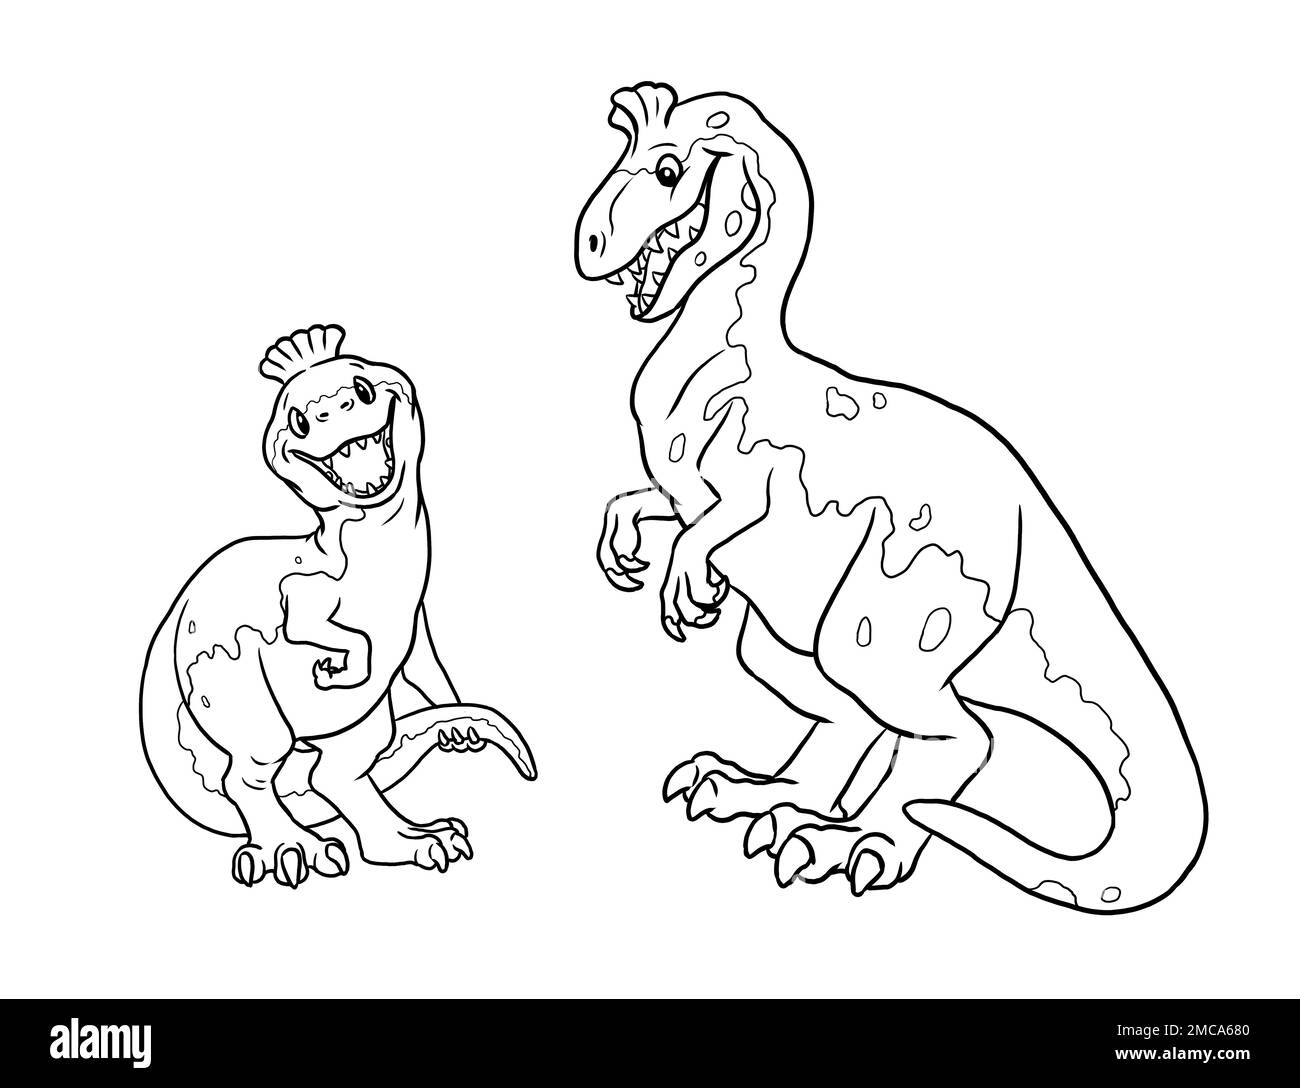 Un joli dinosaure cryolosaurus pour colorier. Modèle pour un livre de coloriage avec famille de dinosaures drôle. Modèle de coloriage pour enfants. Banque D'Images